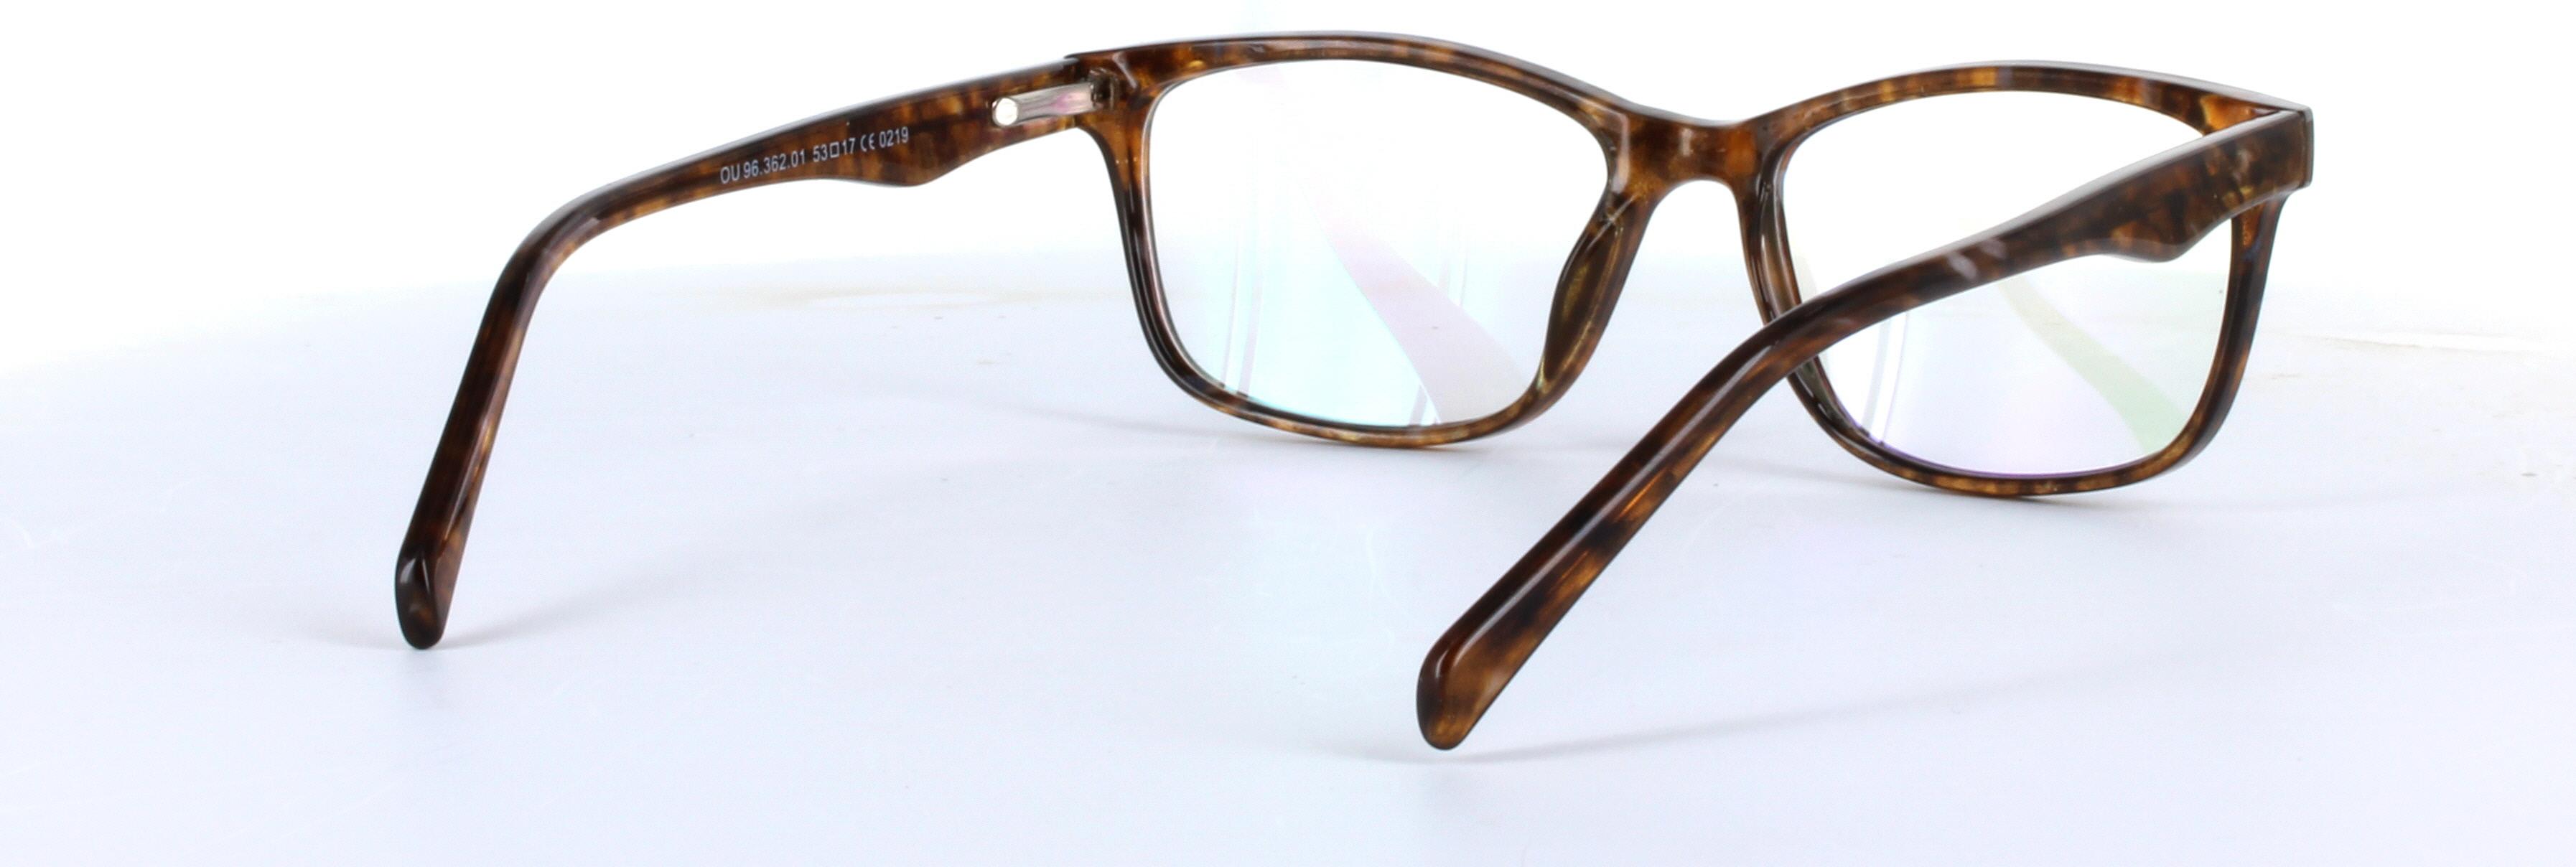 Kamryn Tortoise Full Rim Oval Rectangular Plastic Glasses - Image View 4